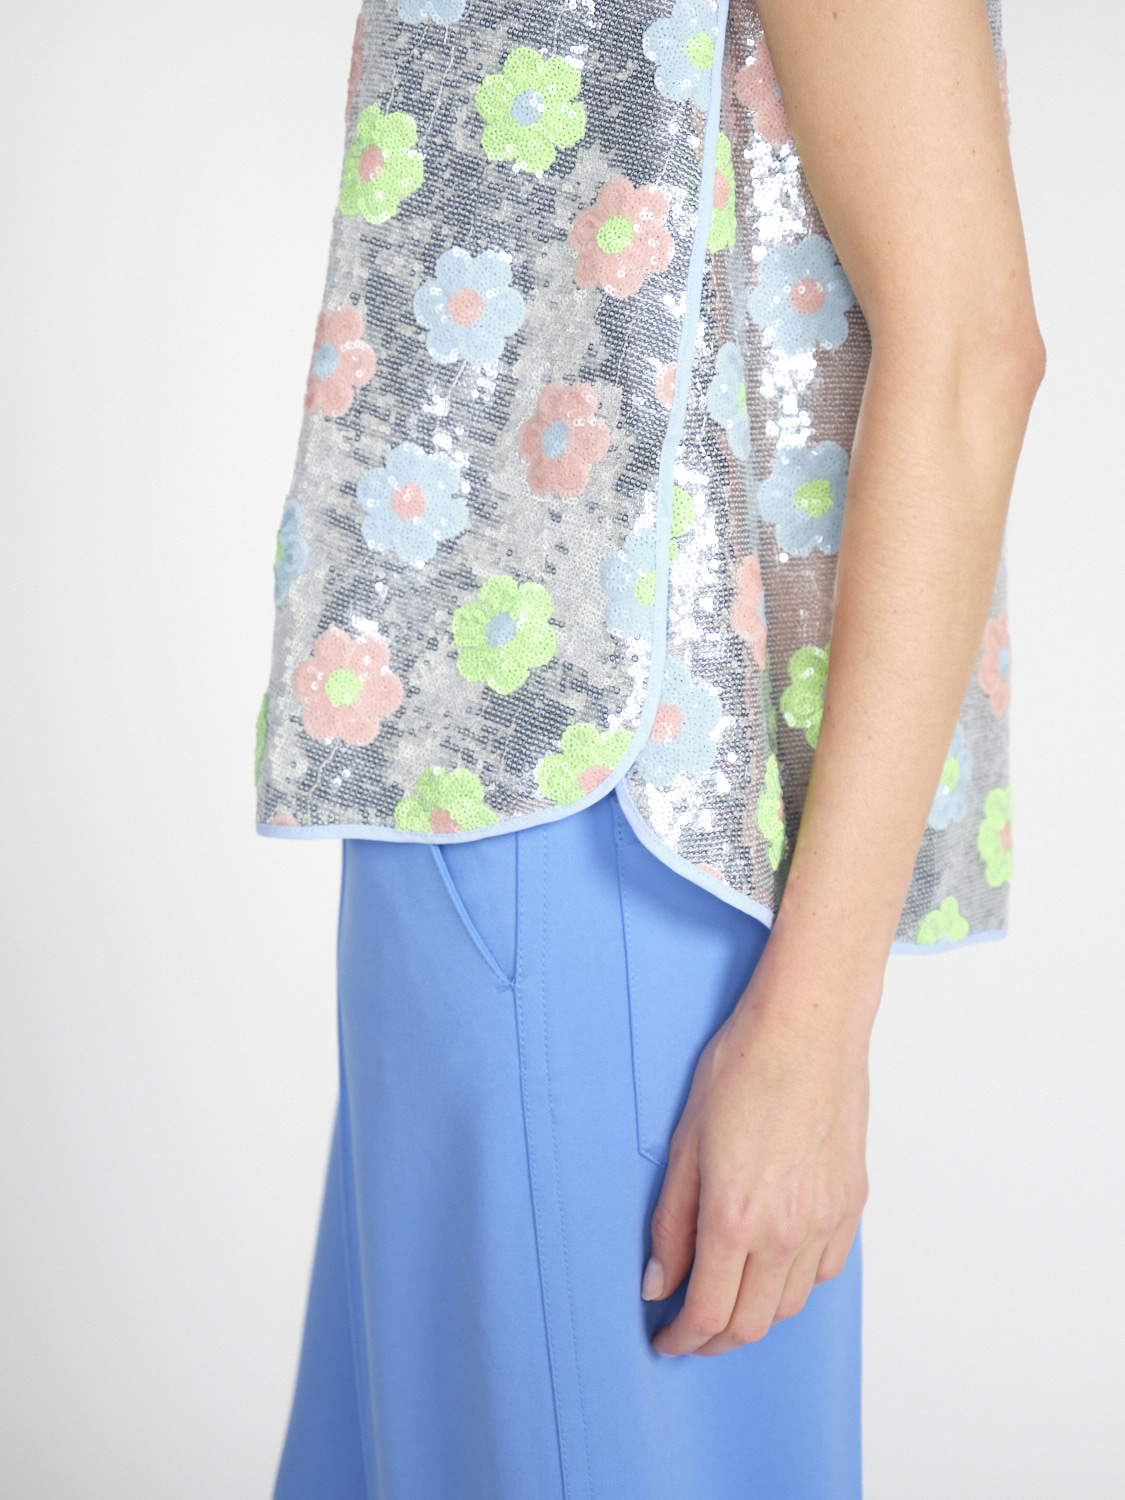 Odeeh Sequins Daisies - Blusa de lentejuelas con diseño floral   multicolor 34